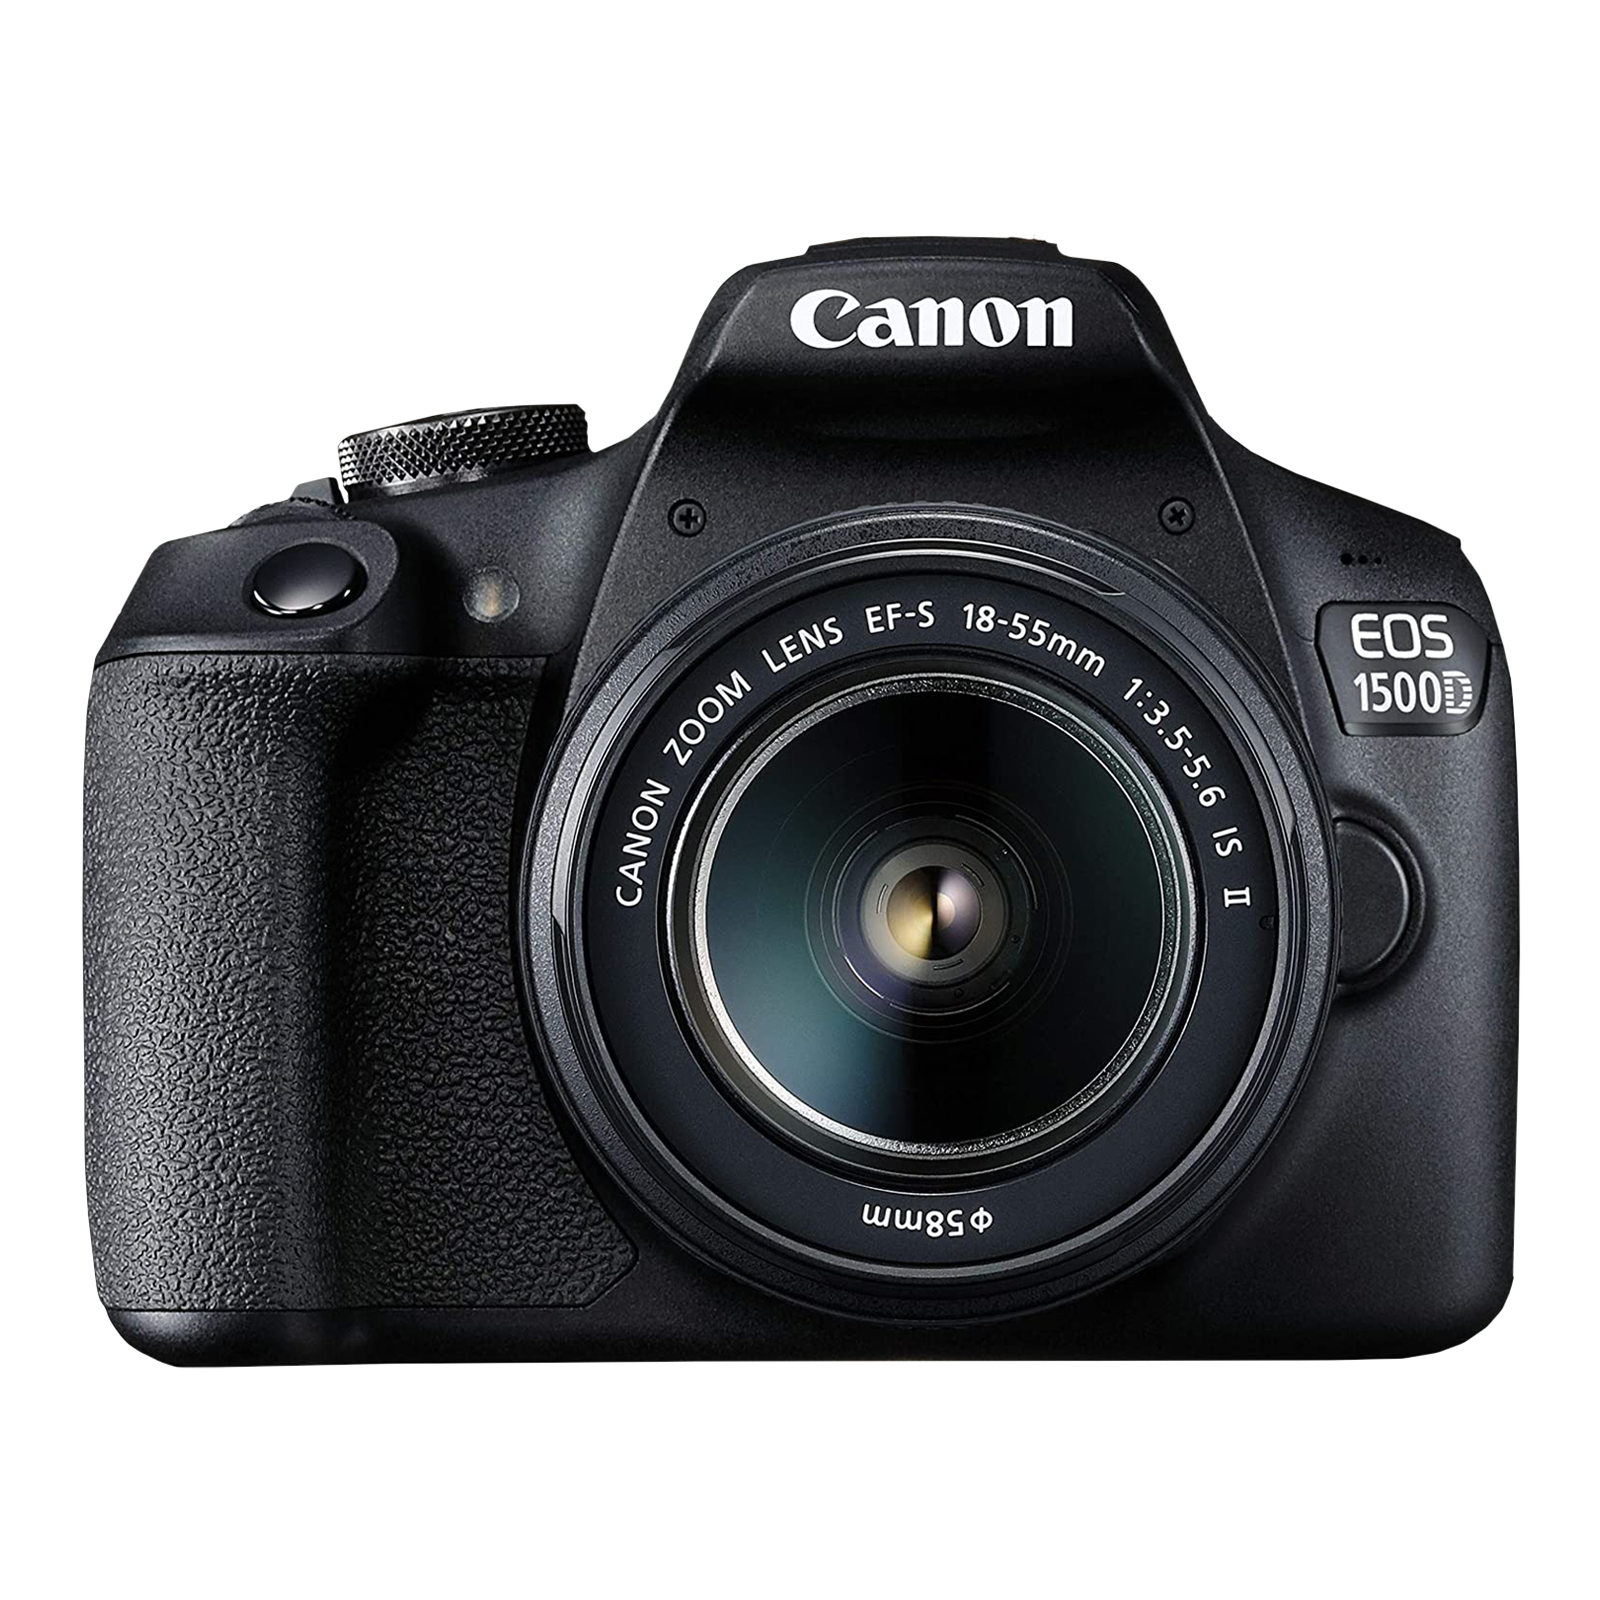 Canon EOS 1500D 24.1MP DSLR Camera (18-55 mm Lens, 22.3 x 14.9 mm Sensor, DIGIC 4+ Image Processor)_1